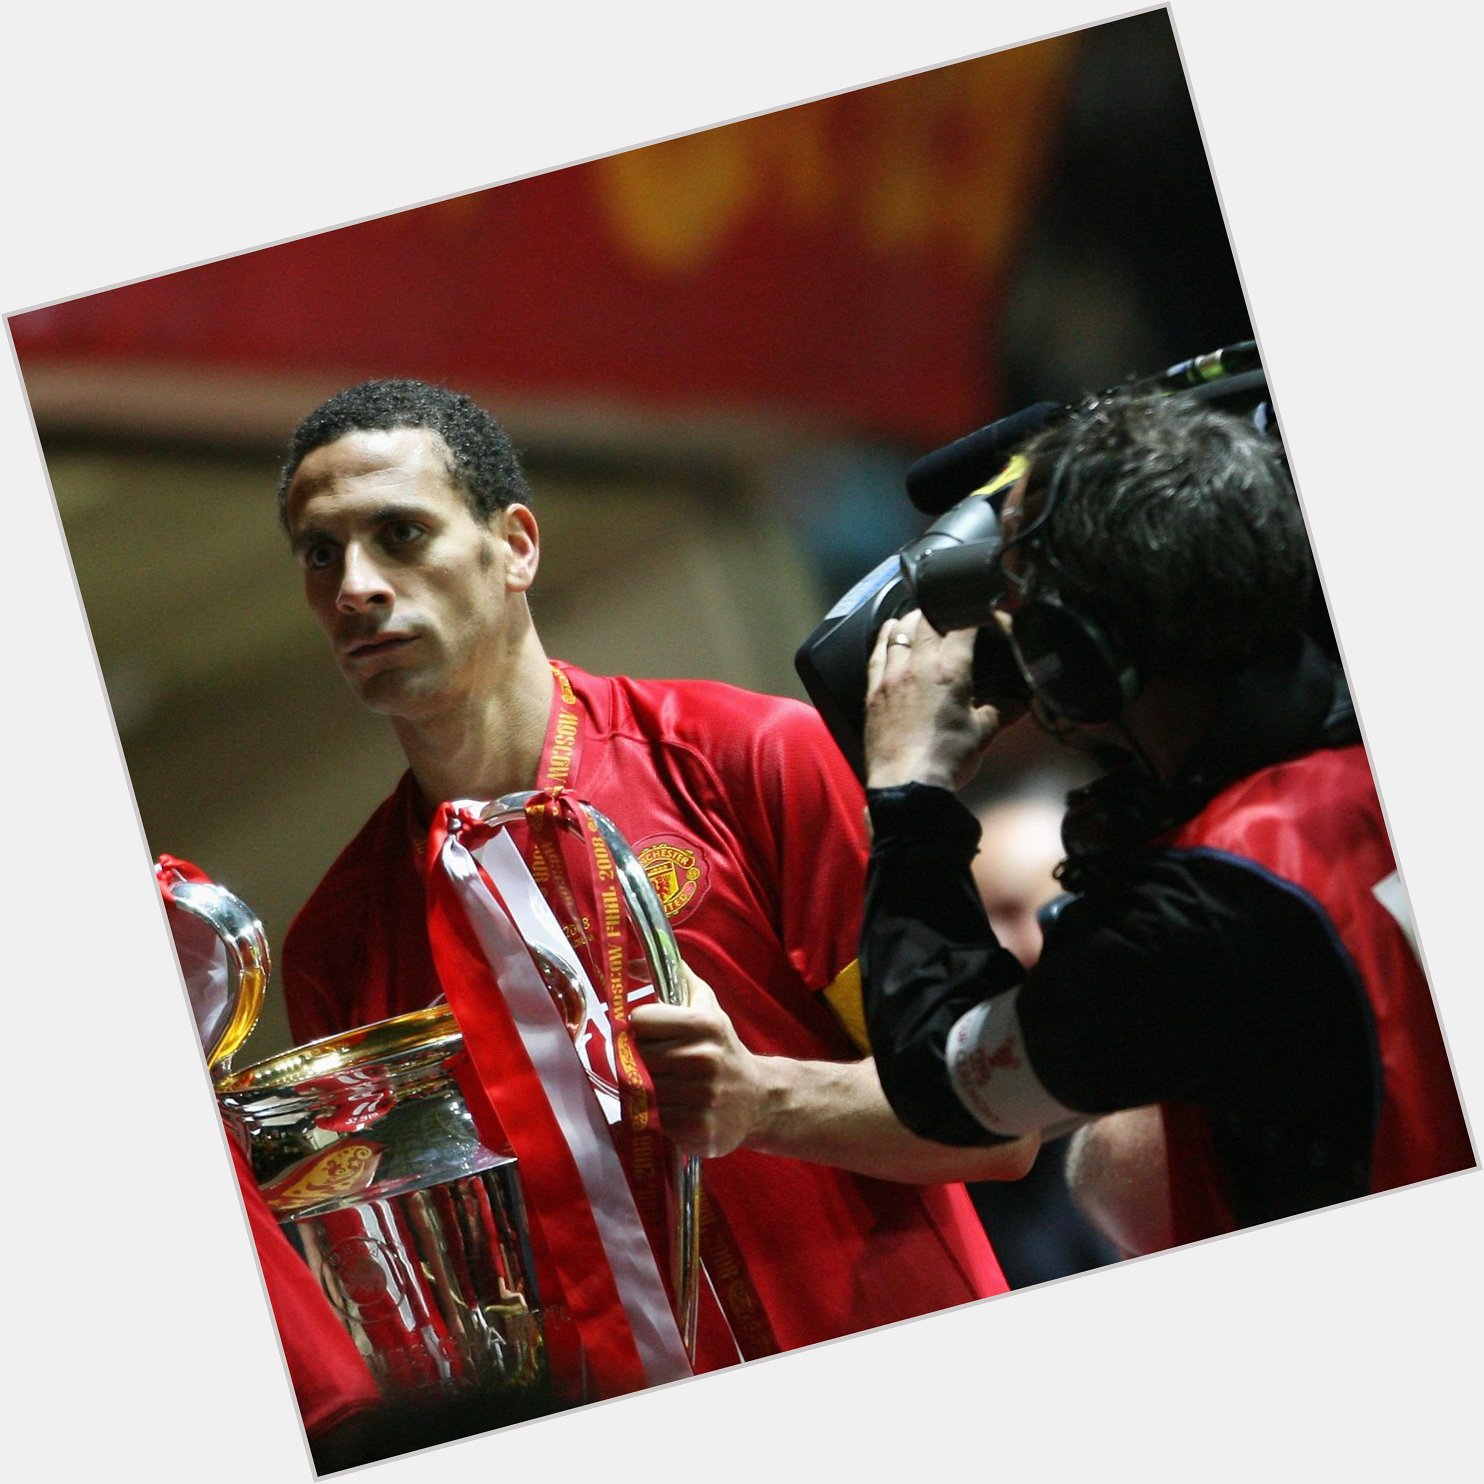  Happy birthday, 2008 winner & Manchester United hero Rio Ferdinand!   